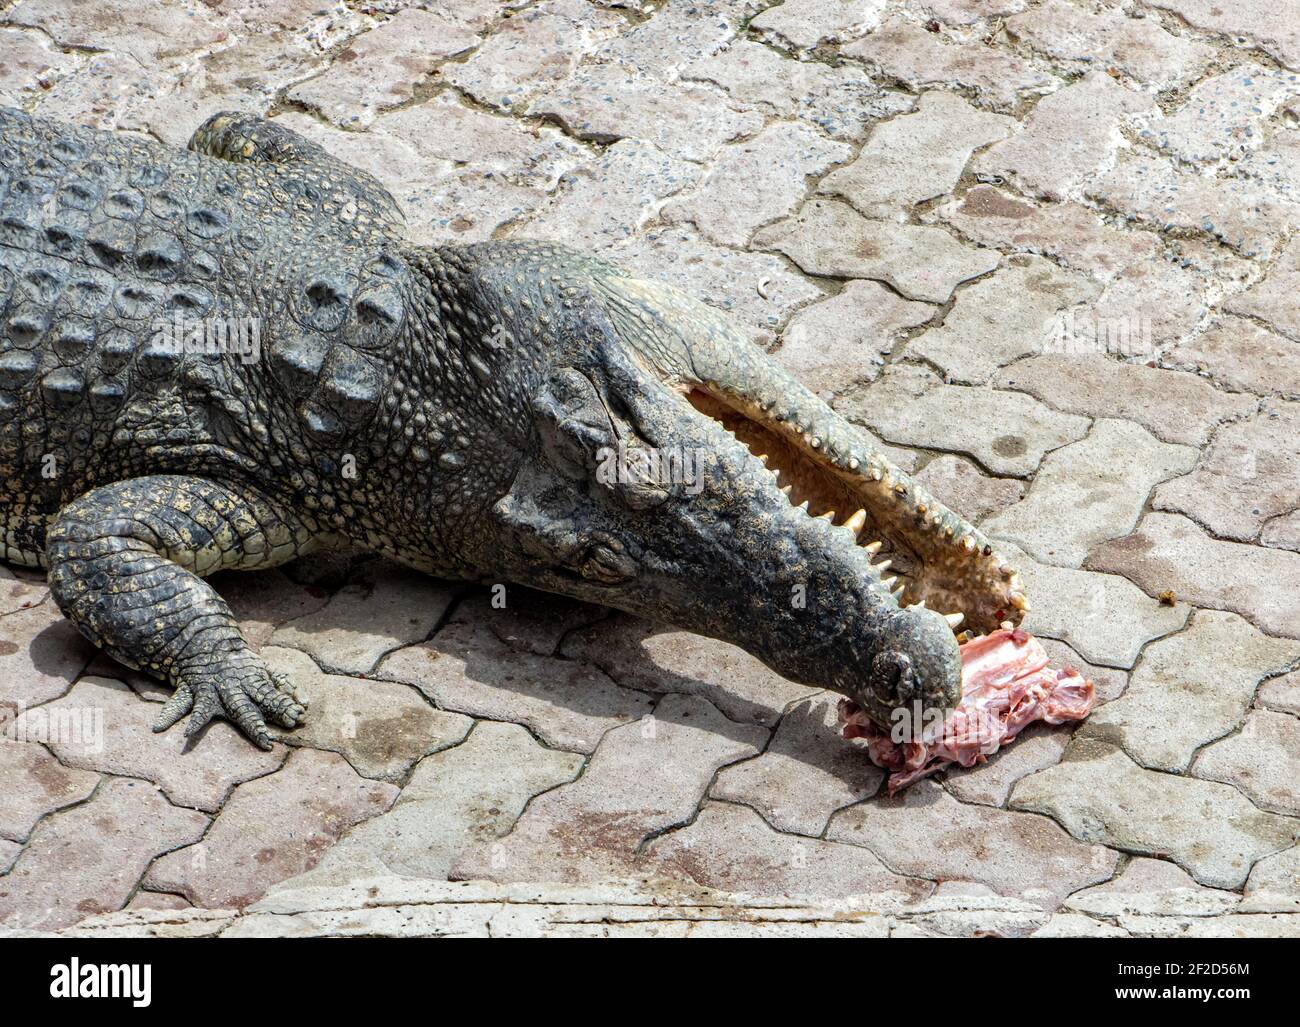 Ein Krokodil auf dem Fliesenboden, das Fleisch zerreißt. Eine Fütterung ein Krokodil in Gefangenschaft. Stockfoto